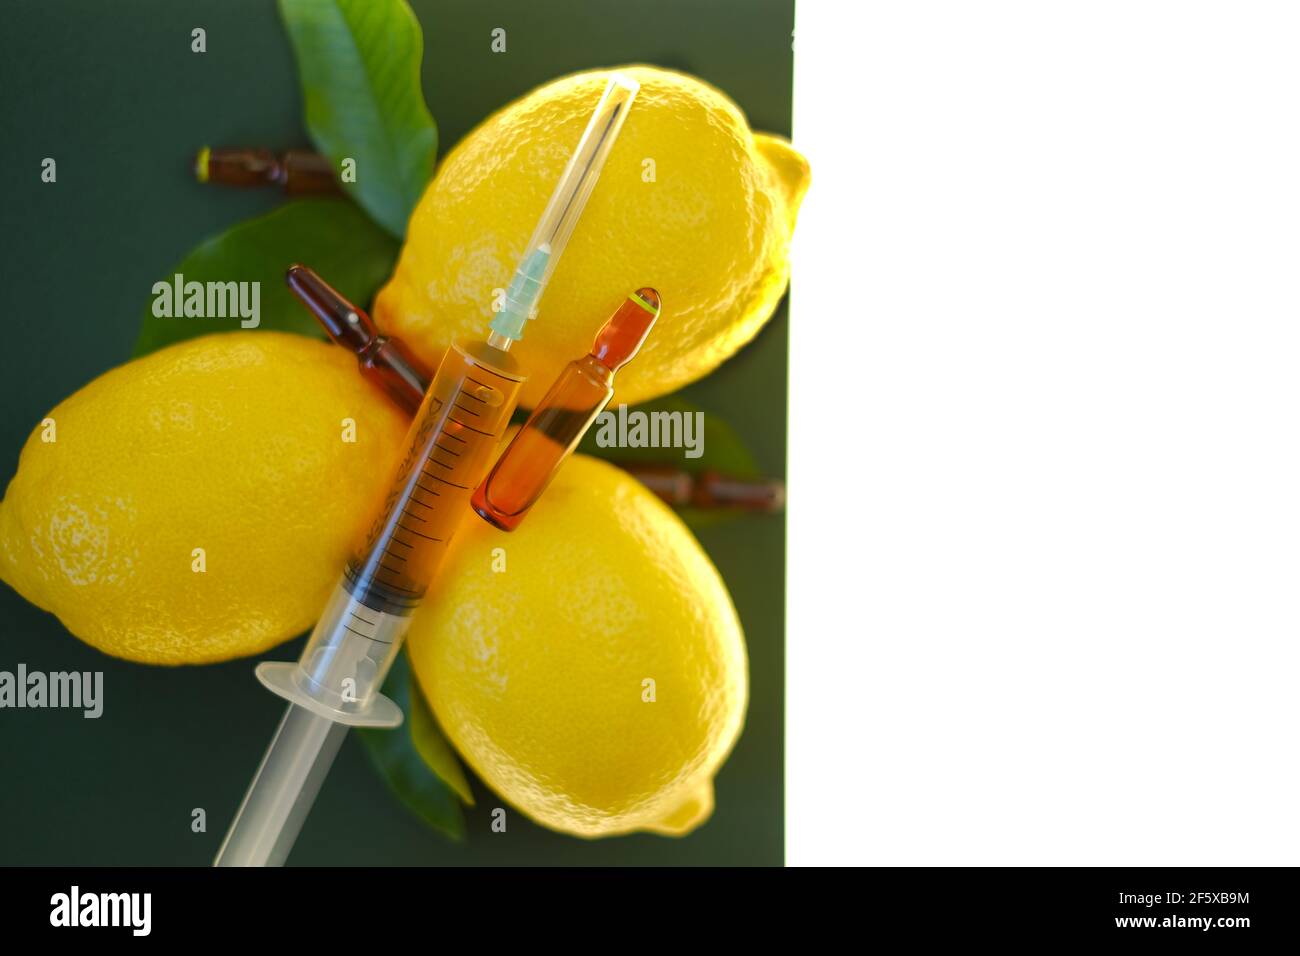 Siero di vitamina C. con vitamina C. ampolle di vetro da vicino, siringa con soluzione iniettabile e limoni di frutta su fondo verde, isolati su fondo bianco Foto Stock